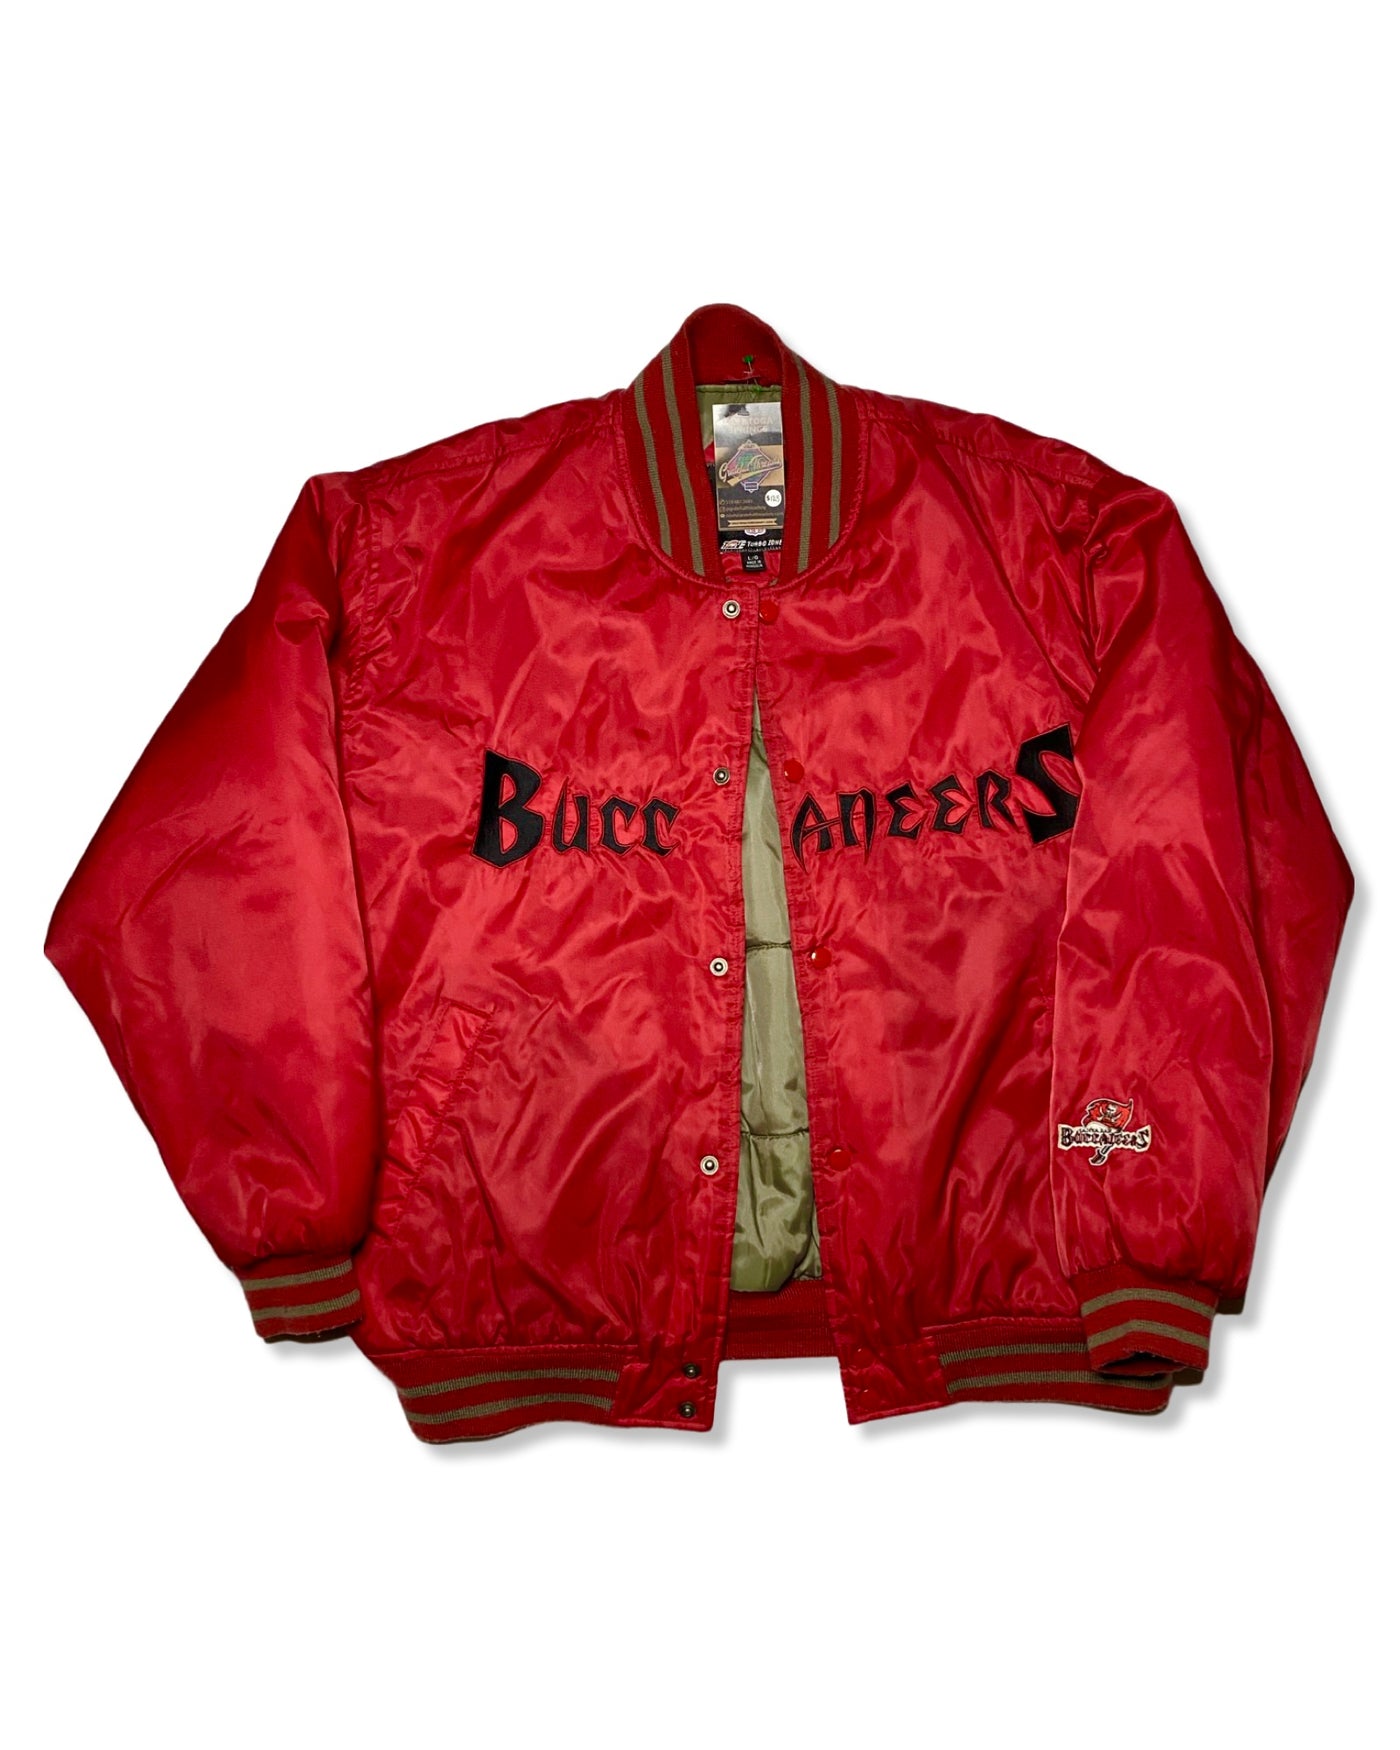 Vintage Tampa Bay Buccaneers Puffer Jacket